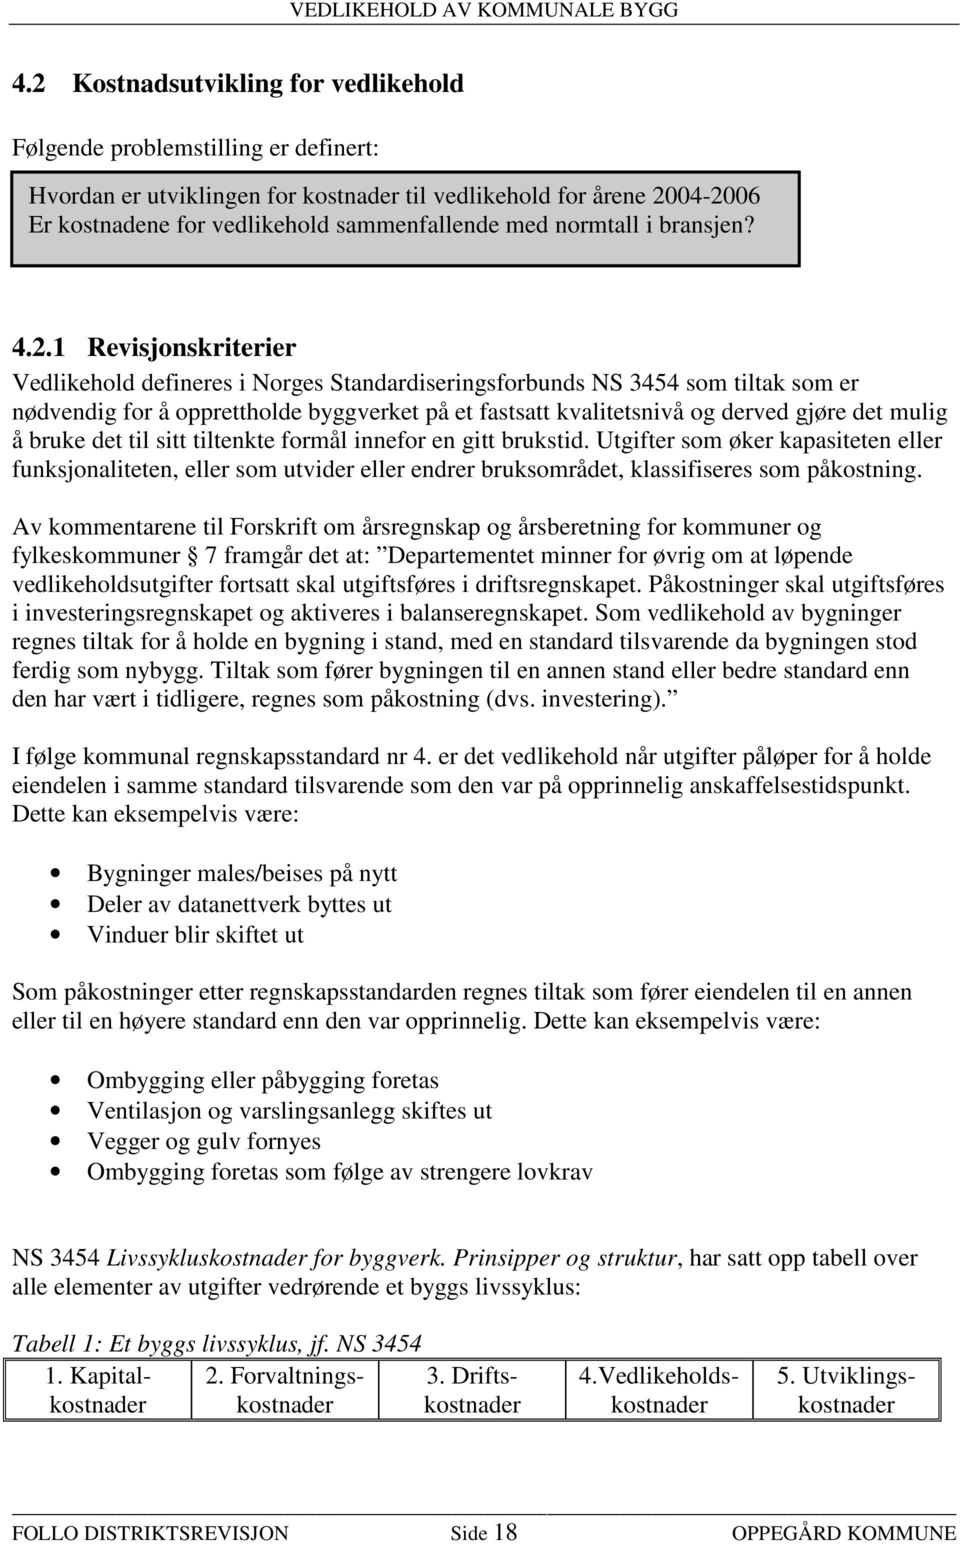 1 Revisjonskriterier Vedlikehold defineres i Norges Standardiseringsforbunds NS 3454 som tiltak som er nødvendig for å opprettholde byggverket på et fastsatt kvalitetsnivå og derved gjøre det mulig å